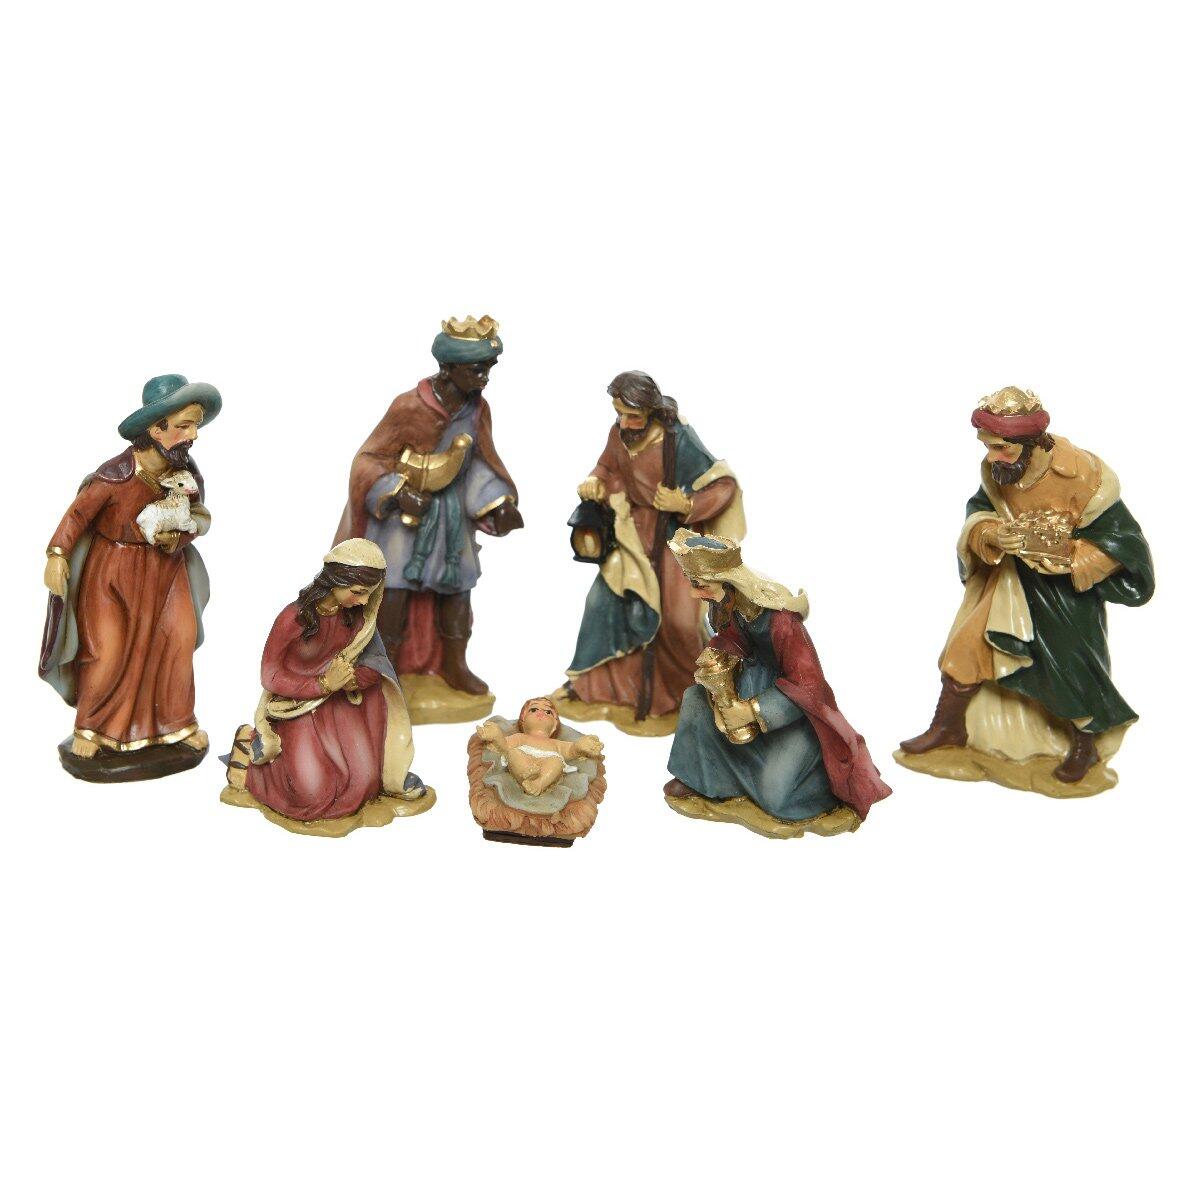 De 7 kleine kerstfiguren van Pierre 1